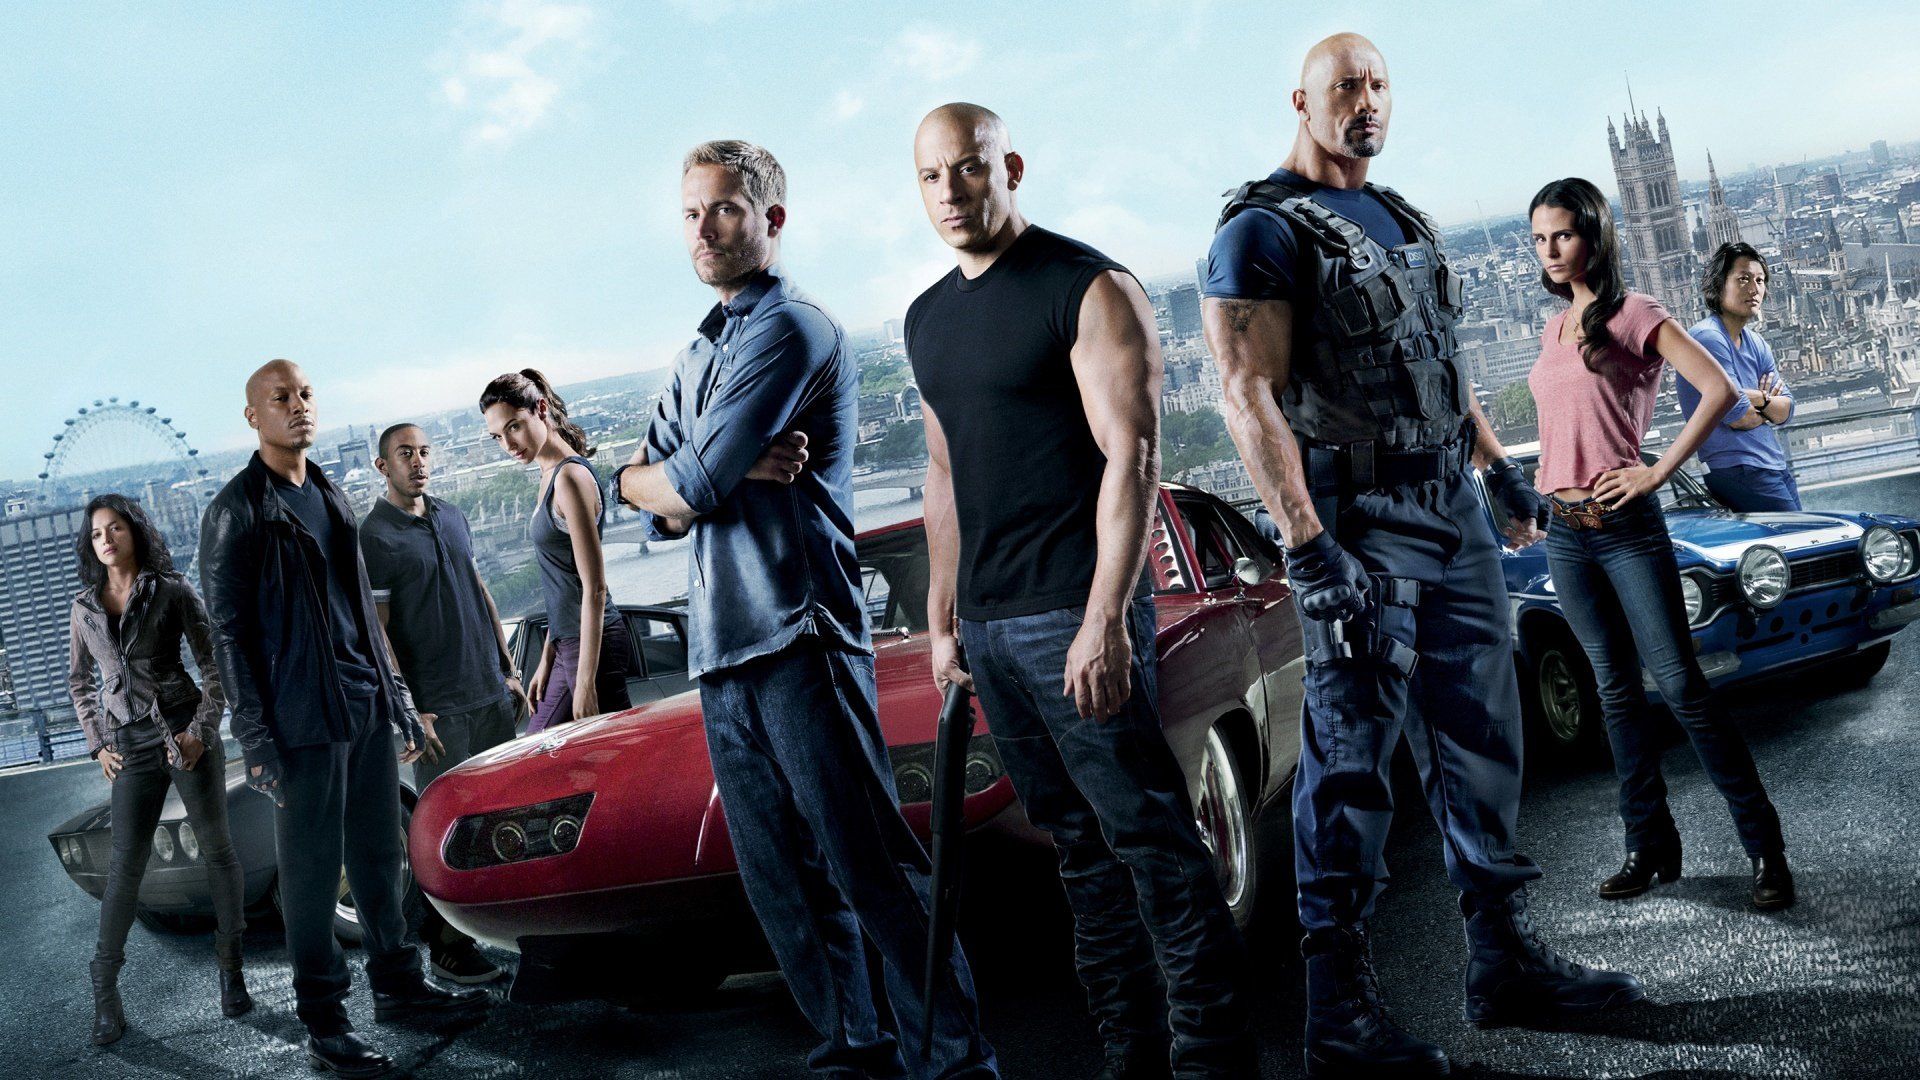 دانلود فیلم Fast & Furious 6 2013